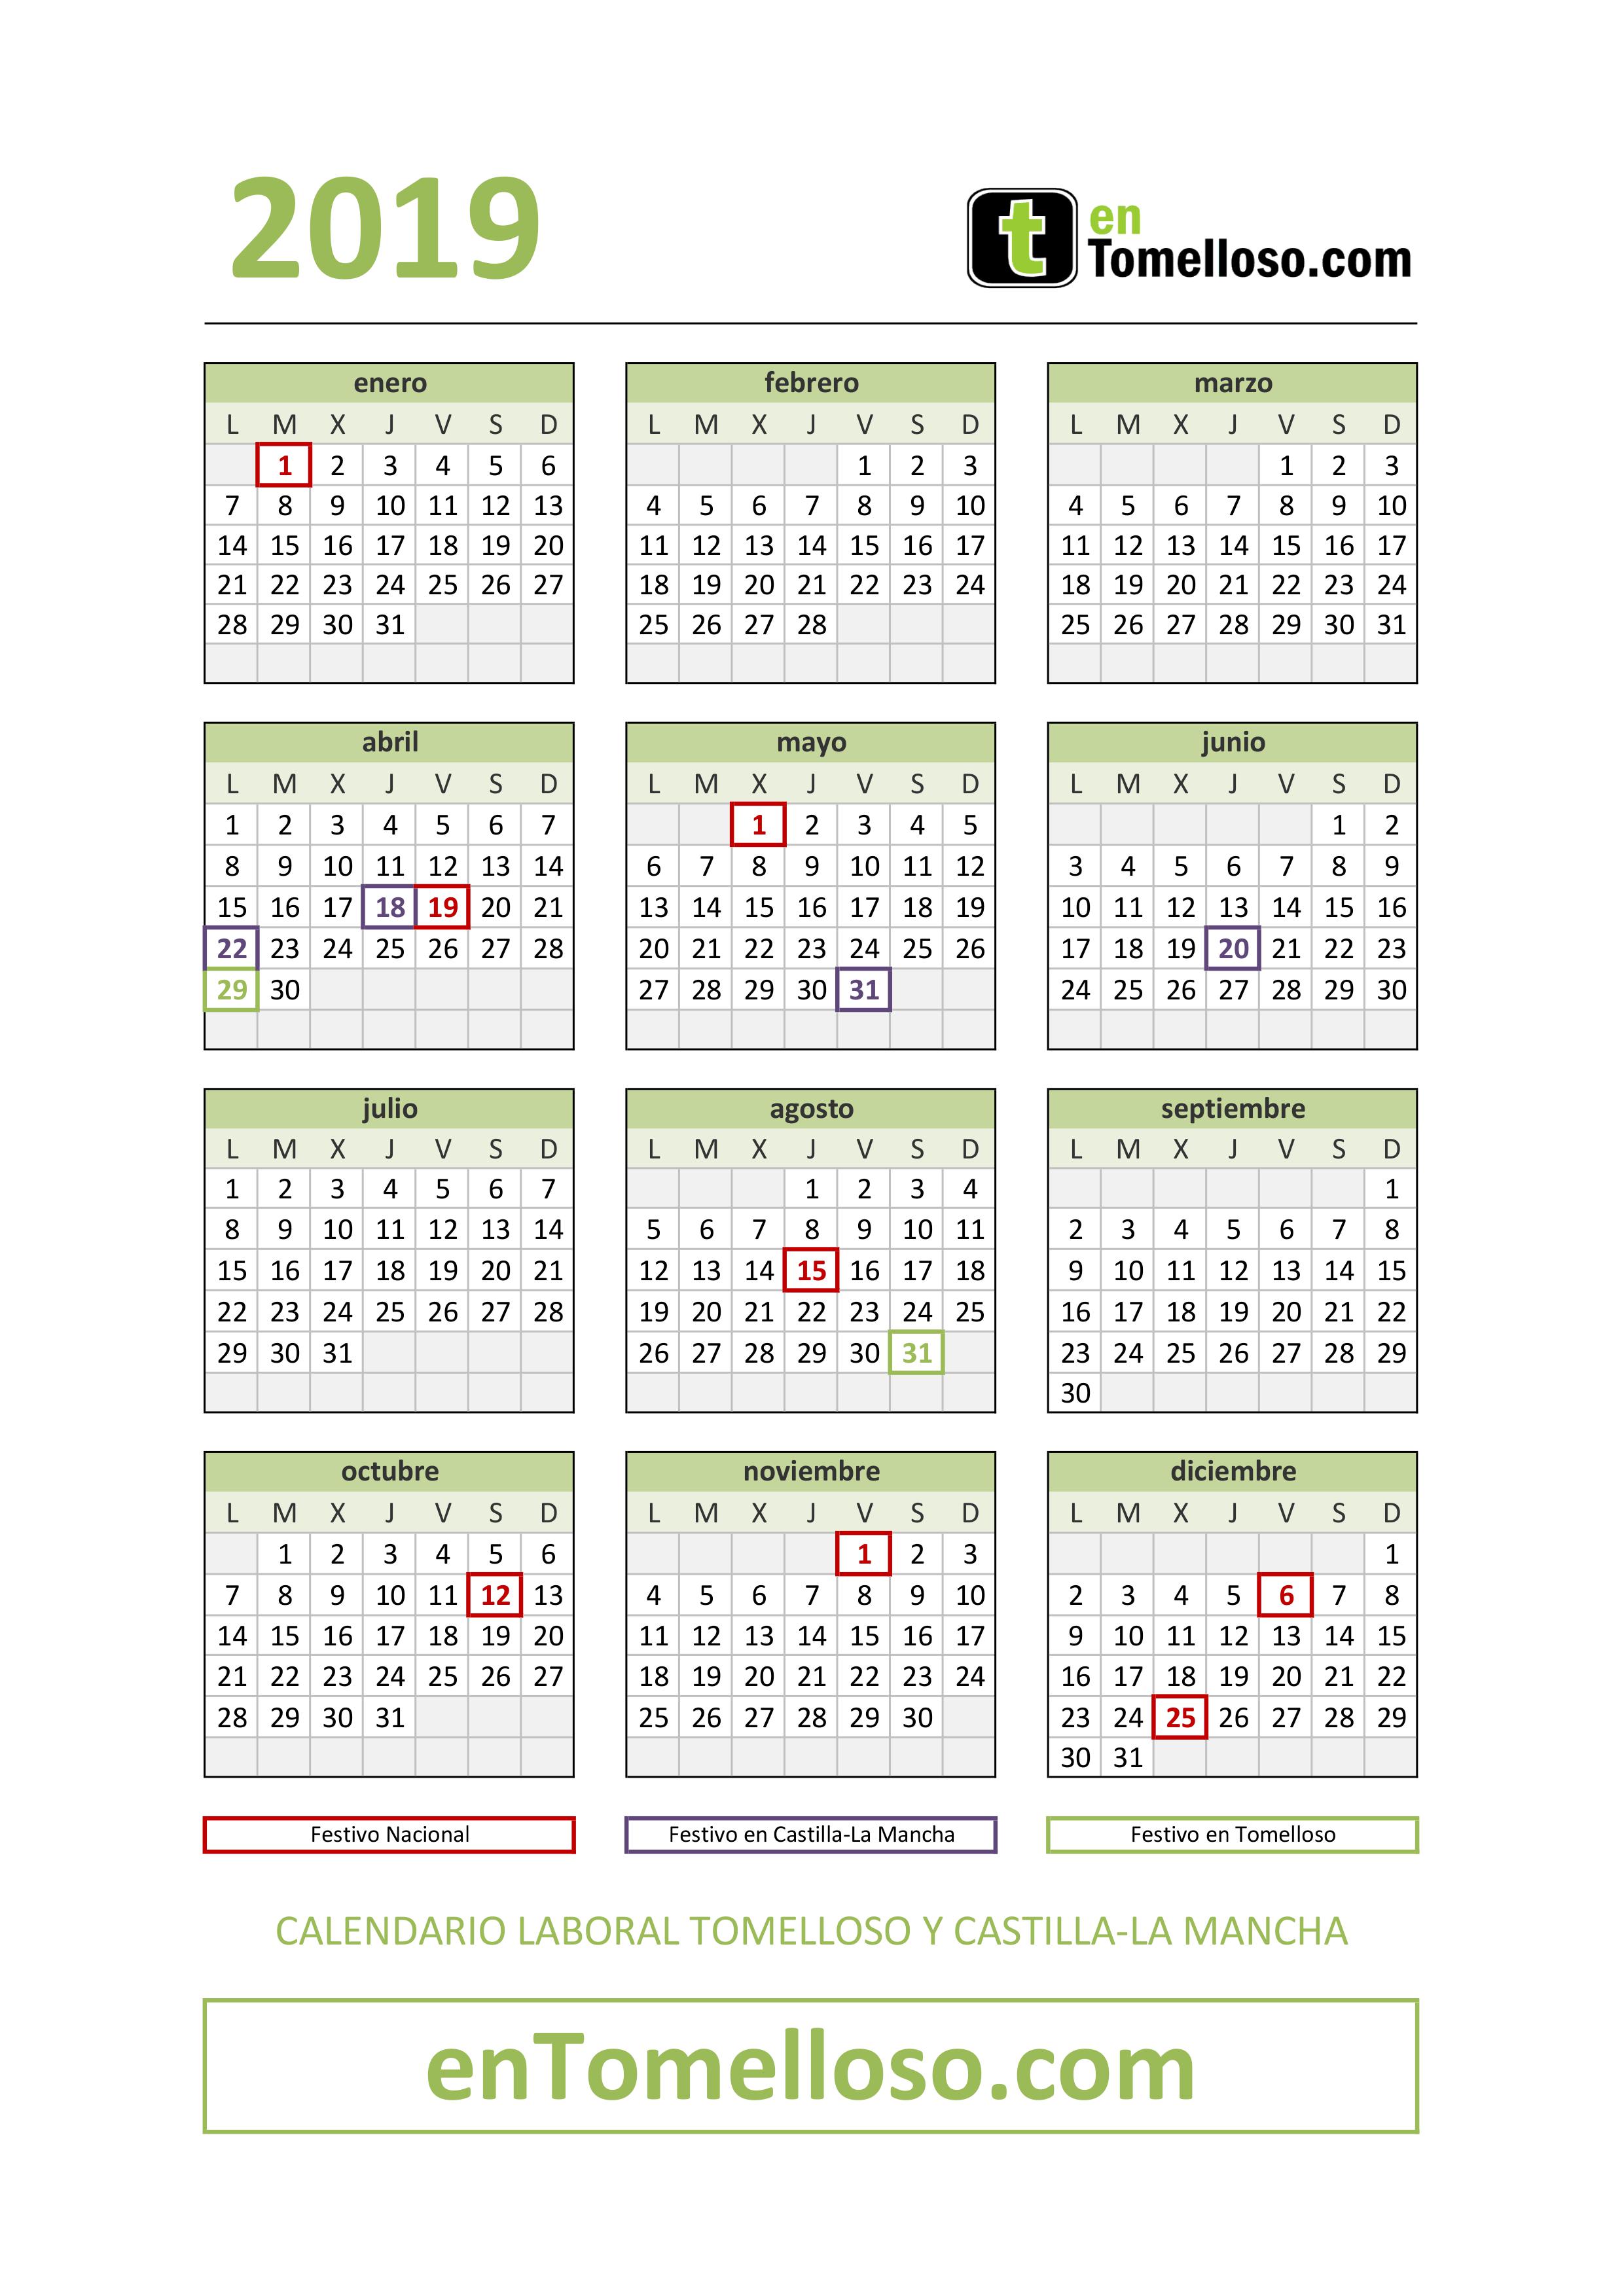 Calendario Laboral Tomelloso y Castilla-La Mancha 2019